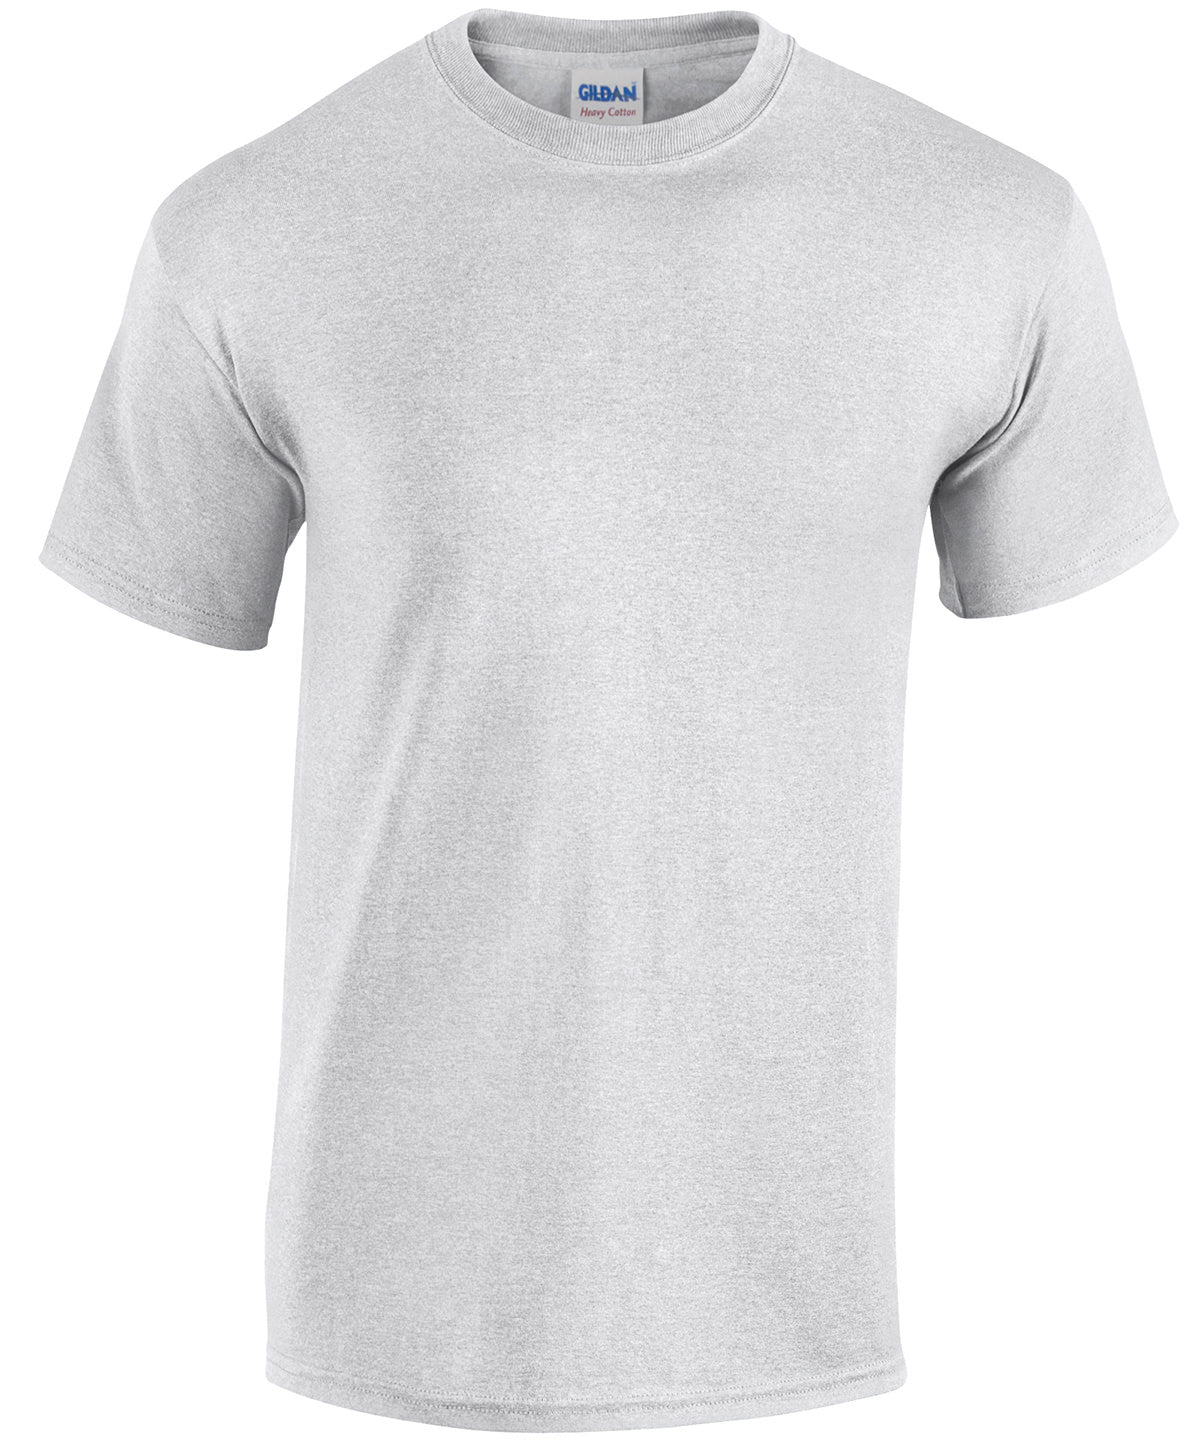 Stuttermabolir - Heavy Cotton™ Adult T-shirt